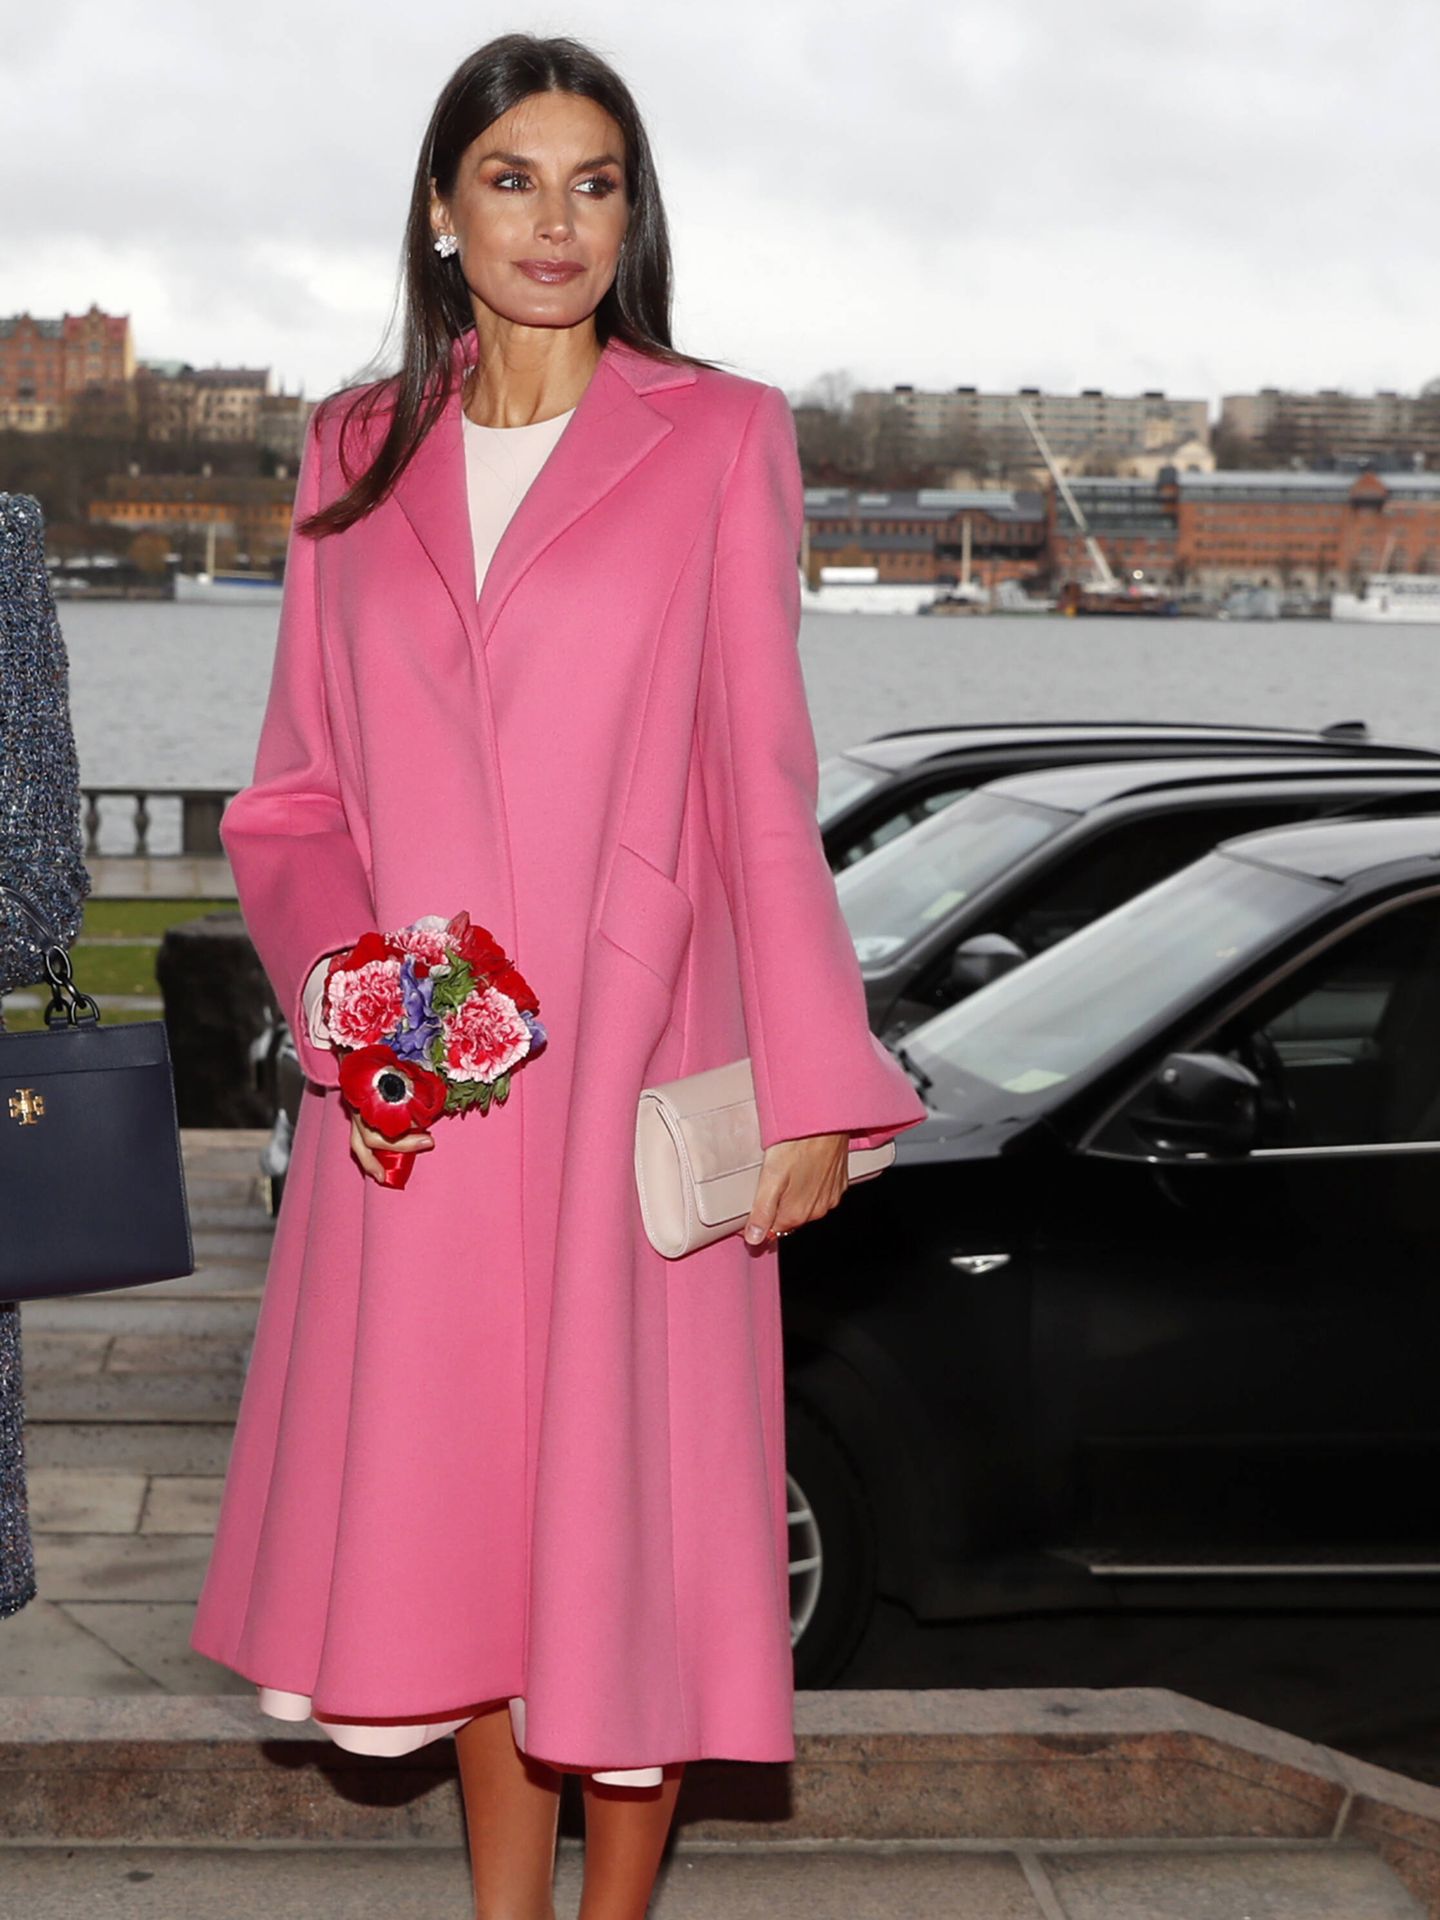 La reina Letizia, con un abrigo rosa fresa. (Gtres)